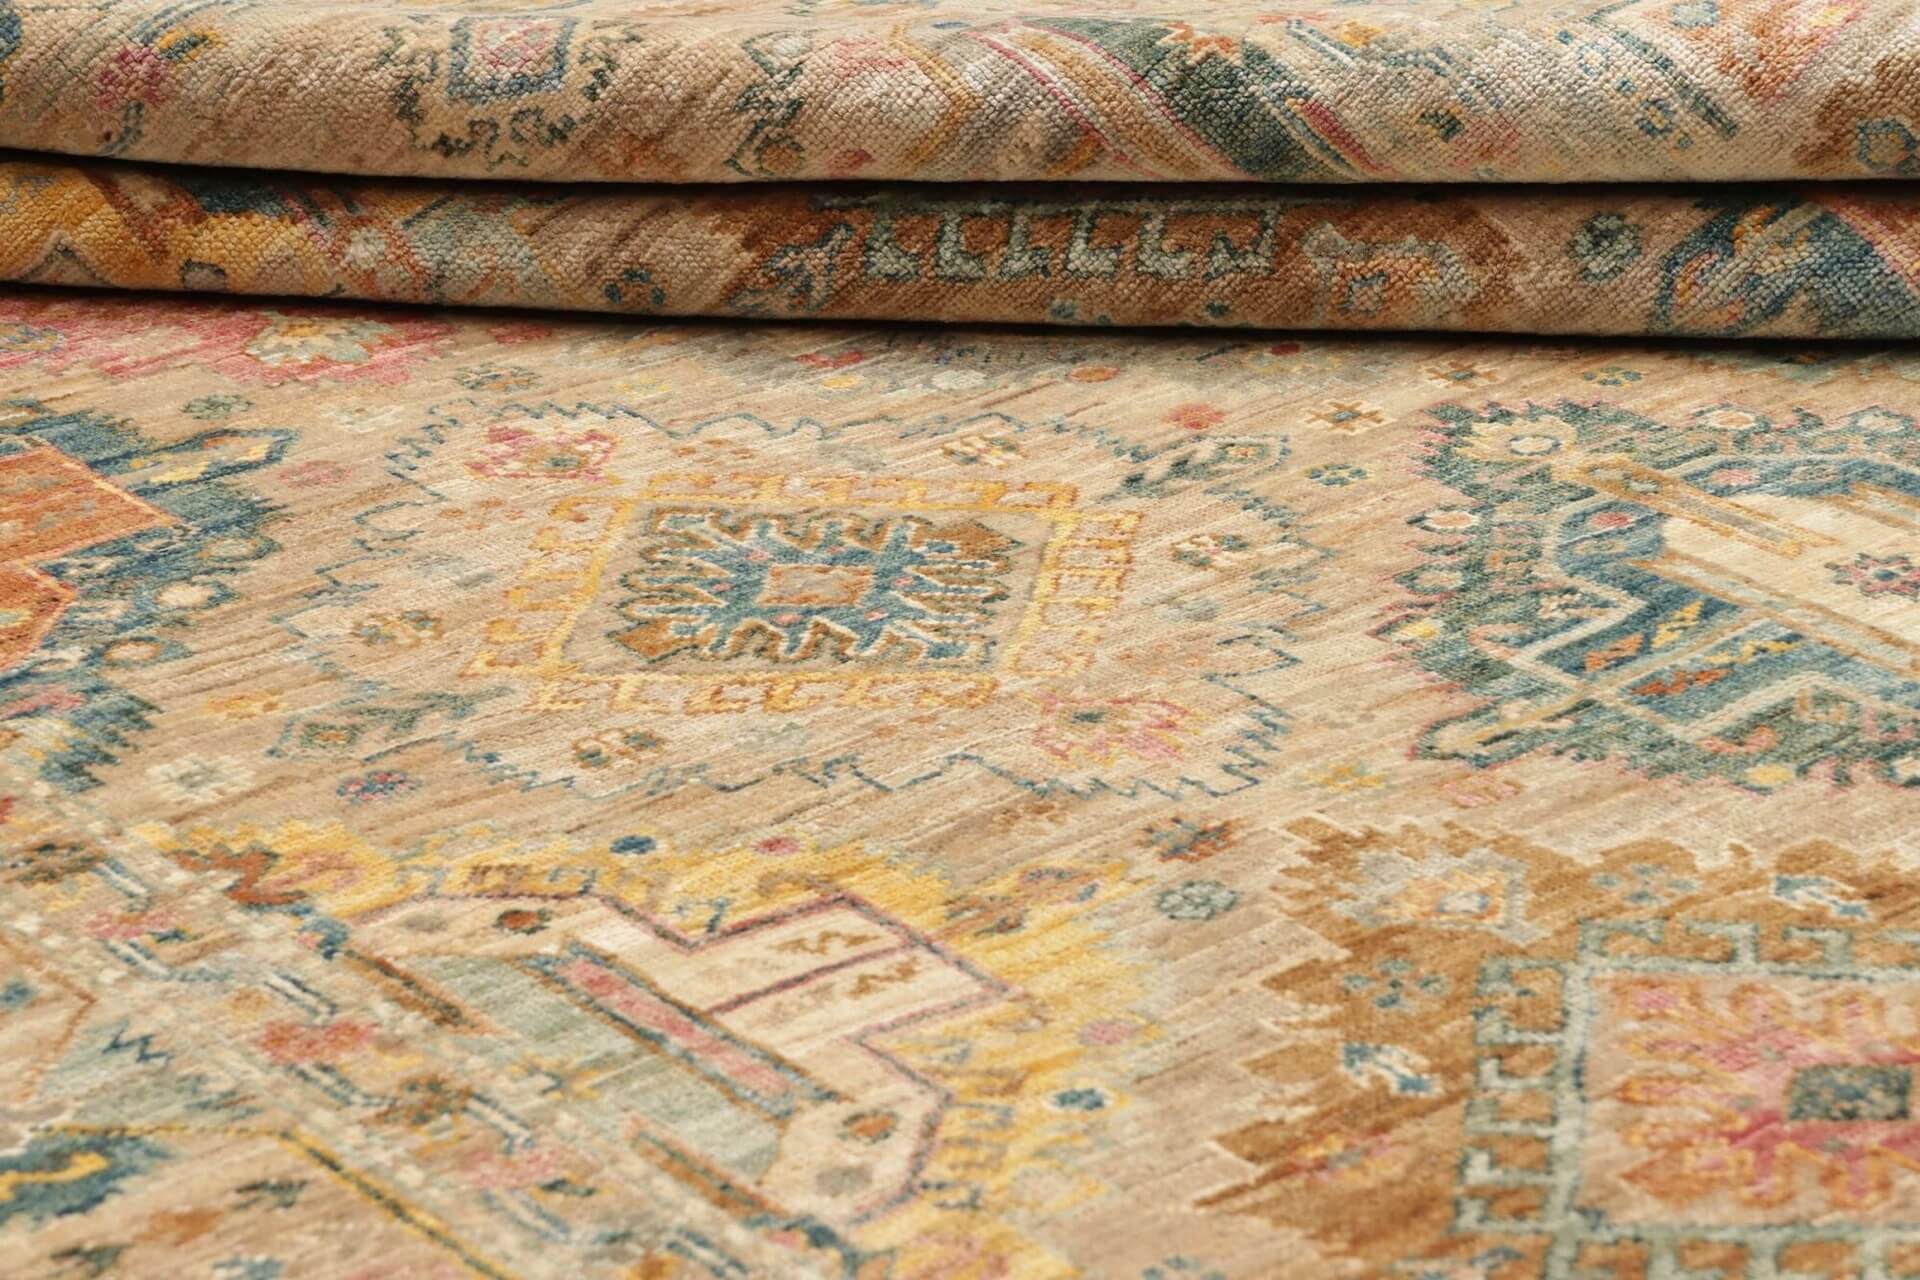  Afghanteppich Triabl Beige, reine Schurwolle, handgeknüpft, 169 x 238 cm, Detailansicht